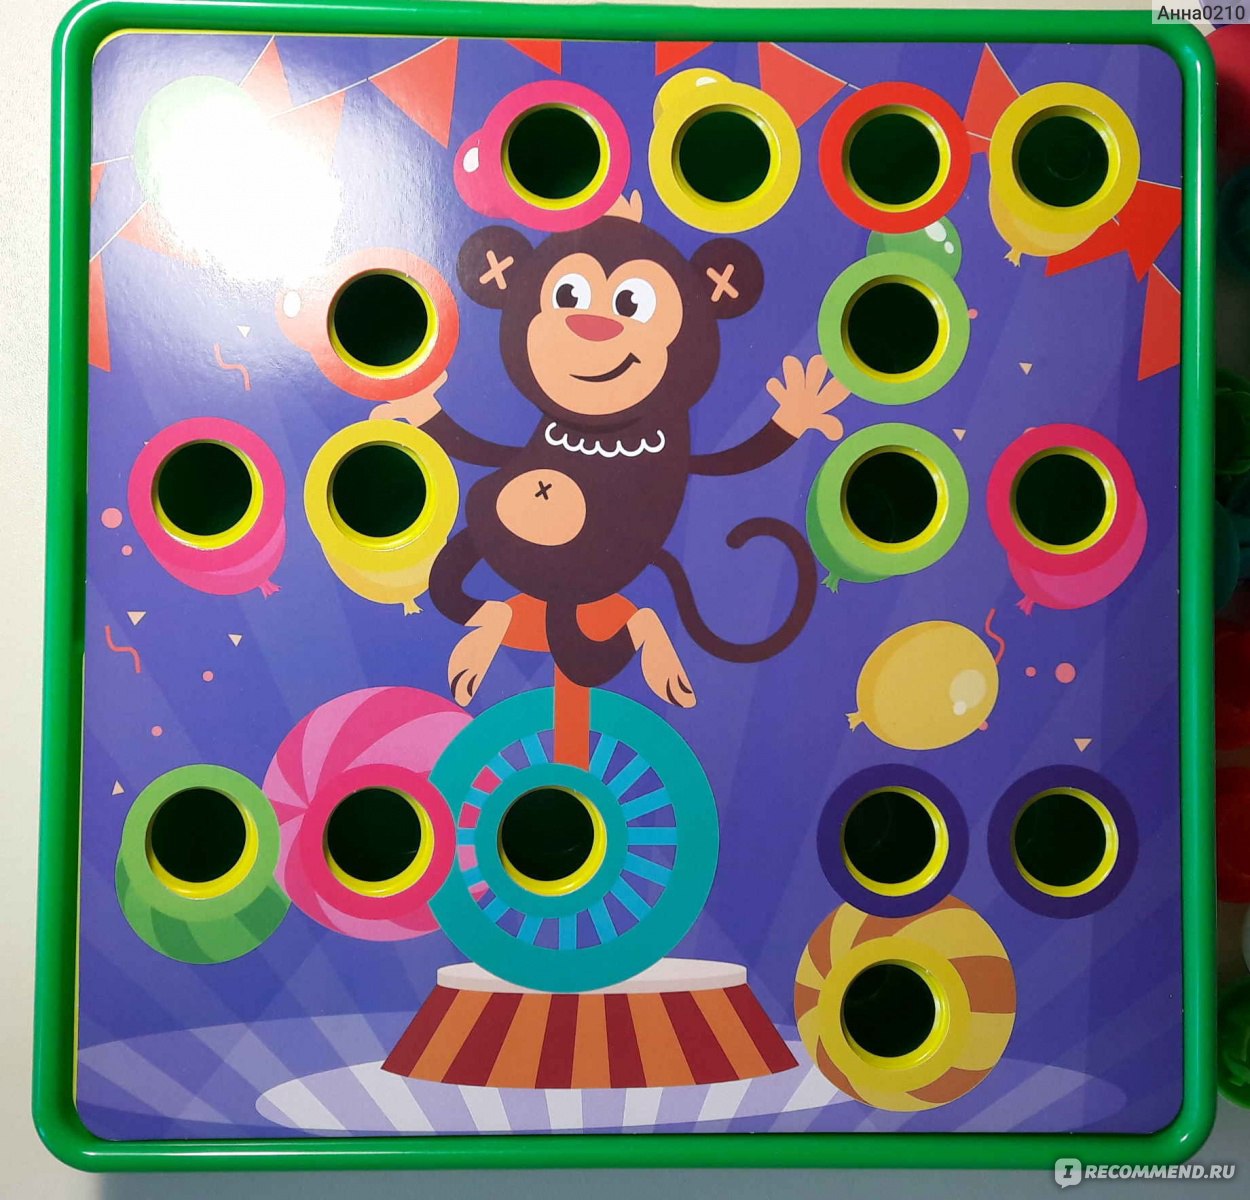 PLAY THE GAME Настольный развивающий пазл с цветными кнопками фото